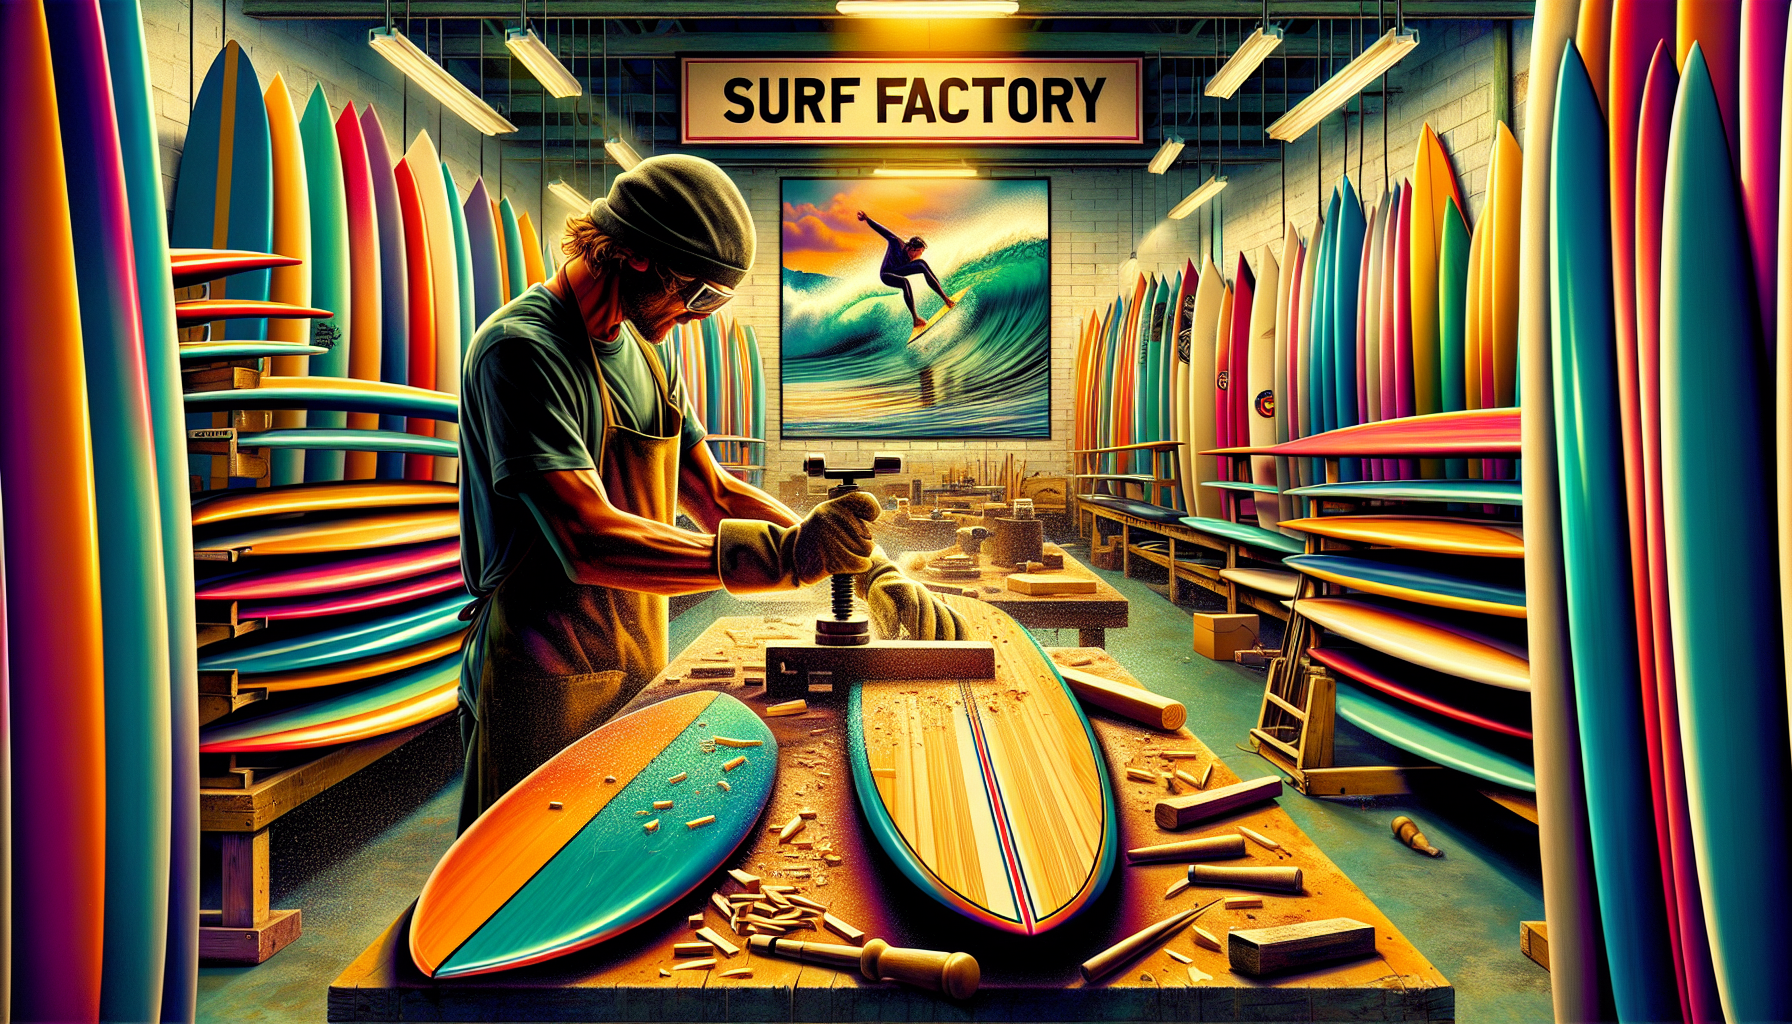 Fábrica de Surf: Tudo que Precisa Saber Antes de Escolher a Melhor Prancha